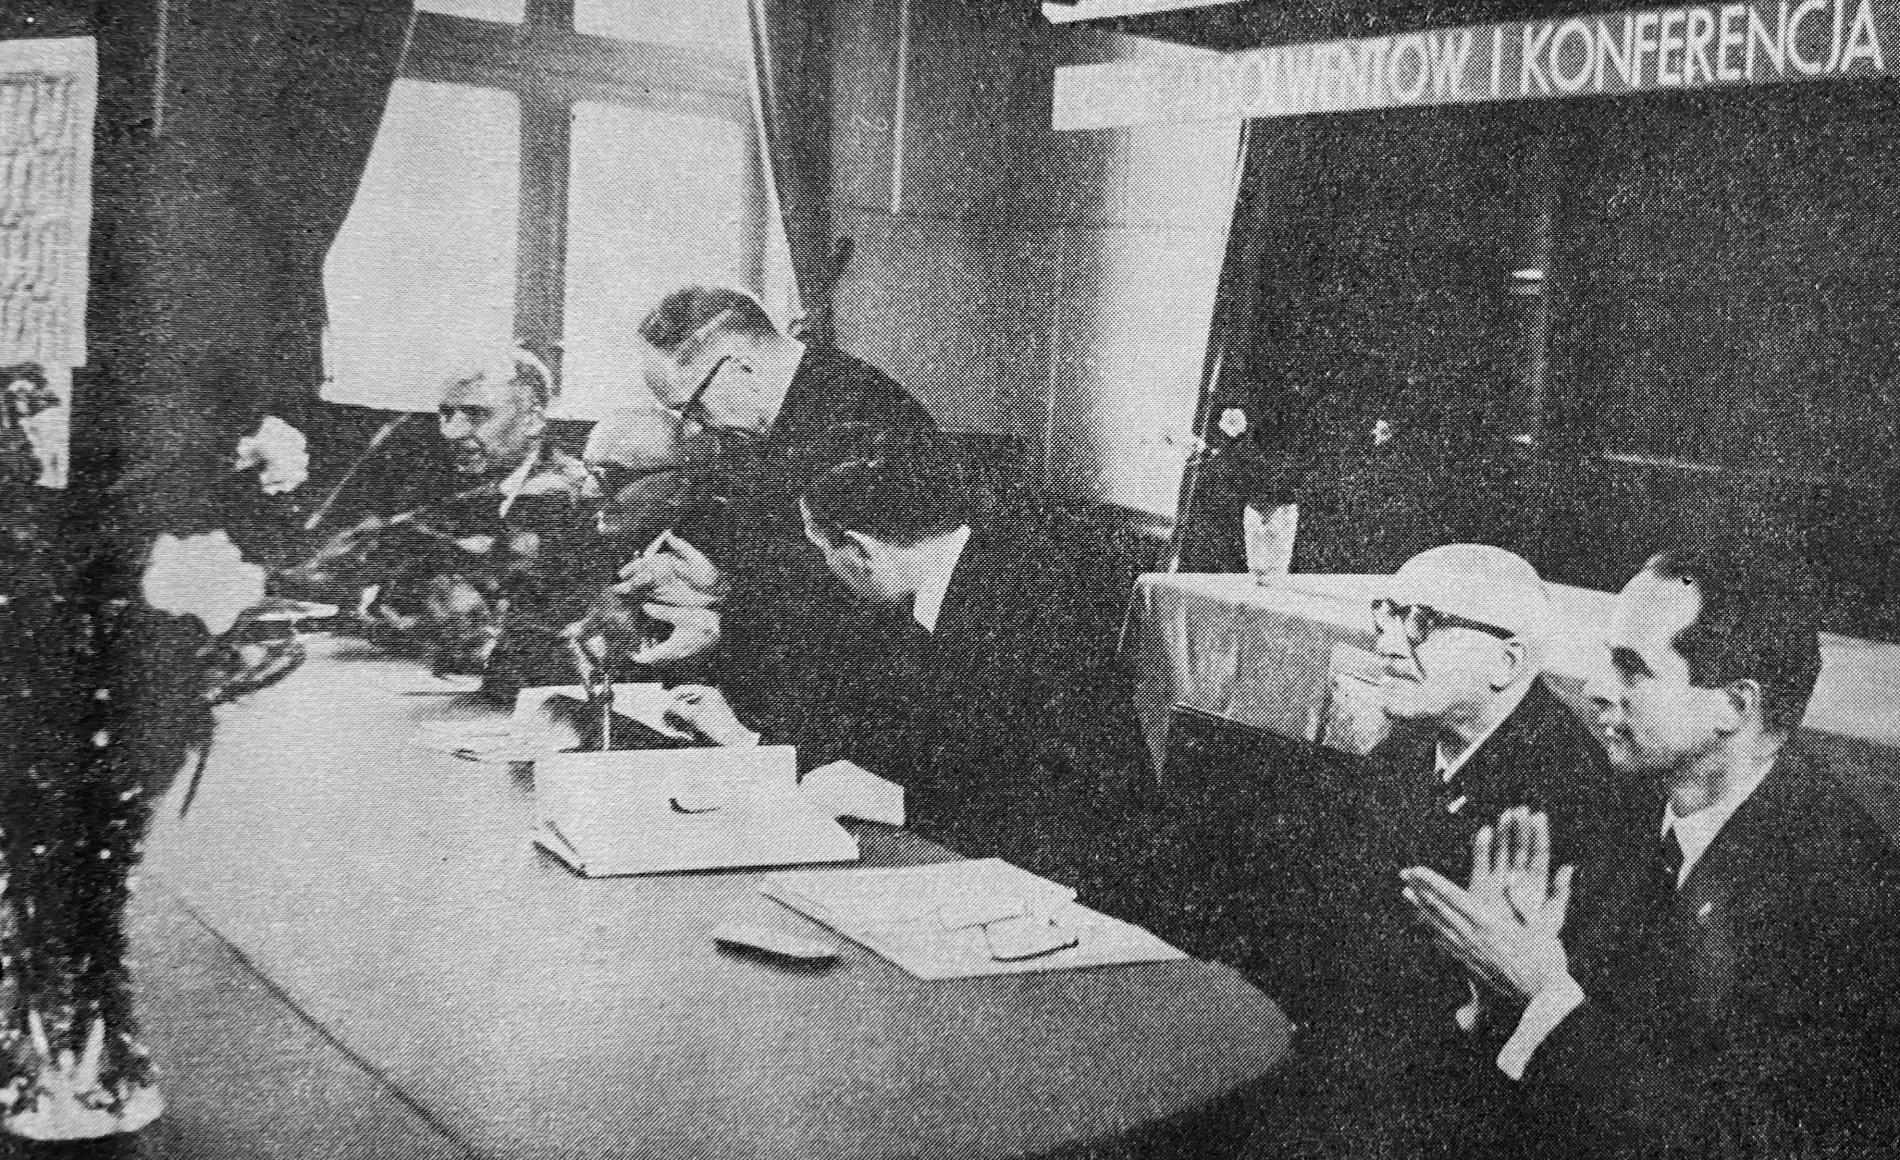 Prezydium Zjazdu Absolwentów i konferencji Wydziału Mechaniczno-Energetycznego (1965)